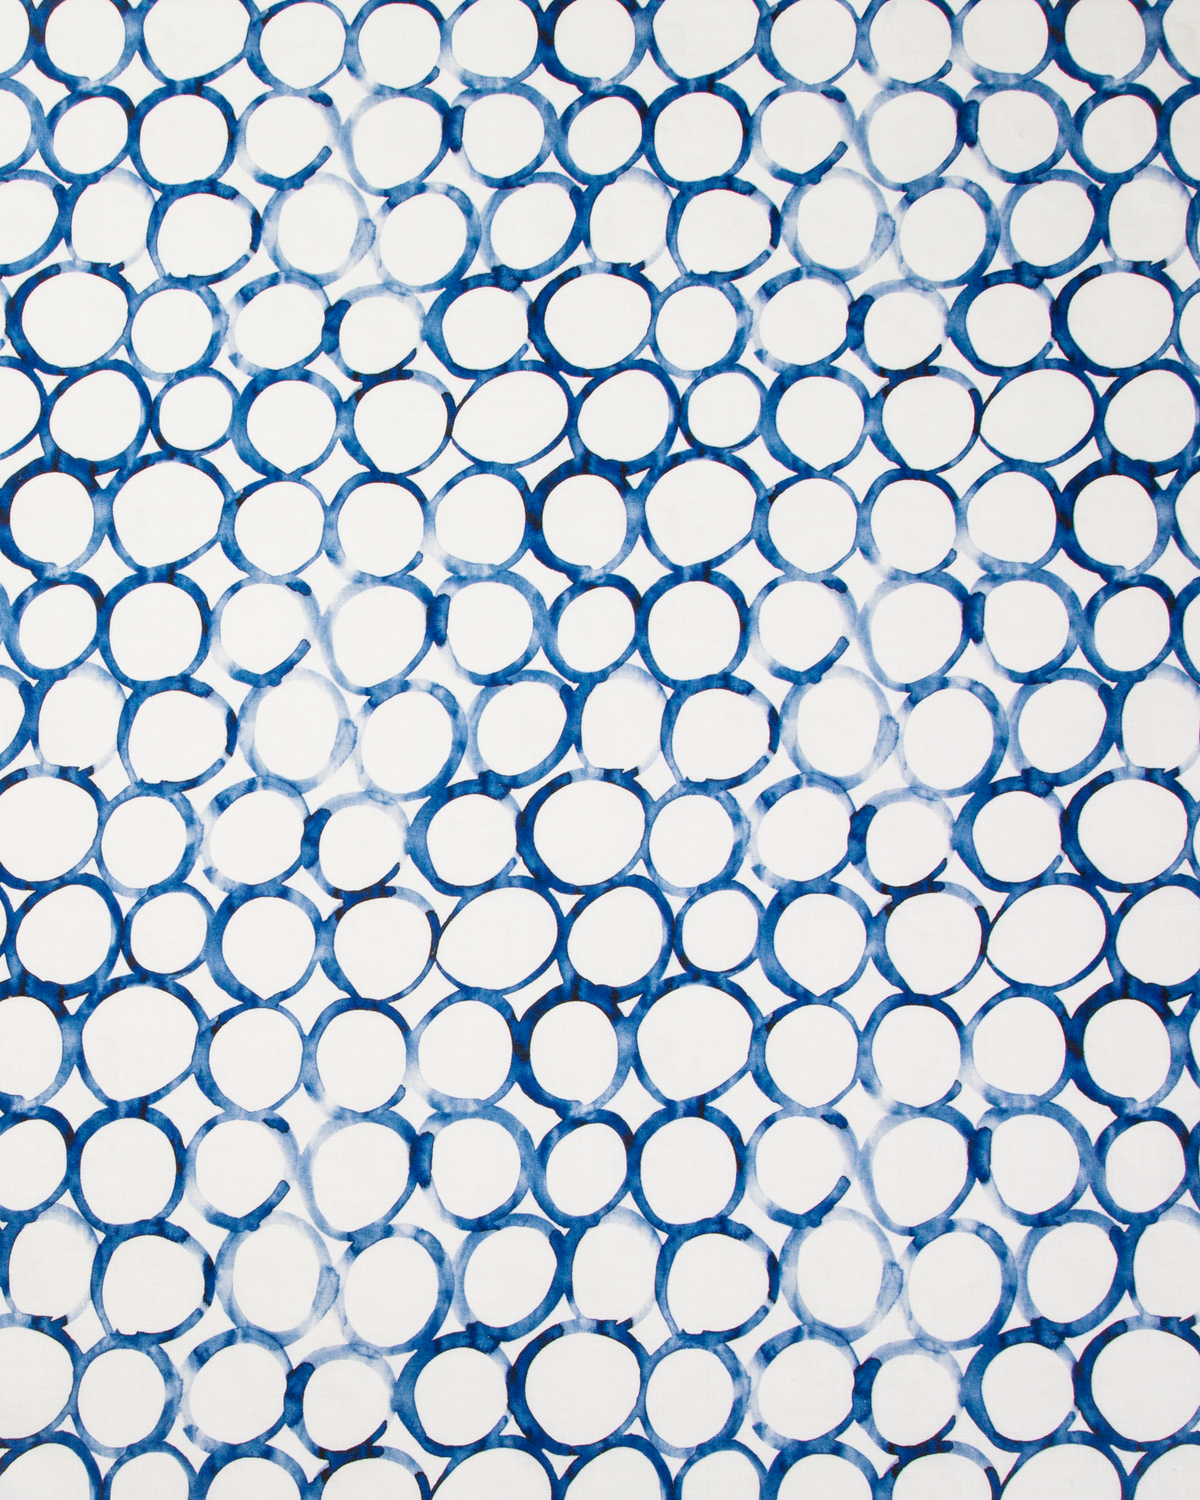 Interlocking Circles Fabric in Cobalt